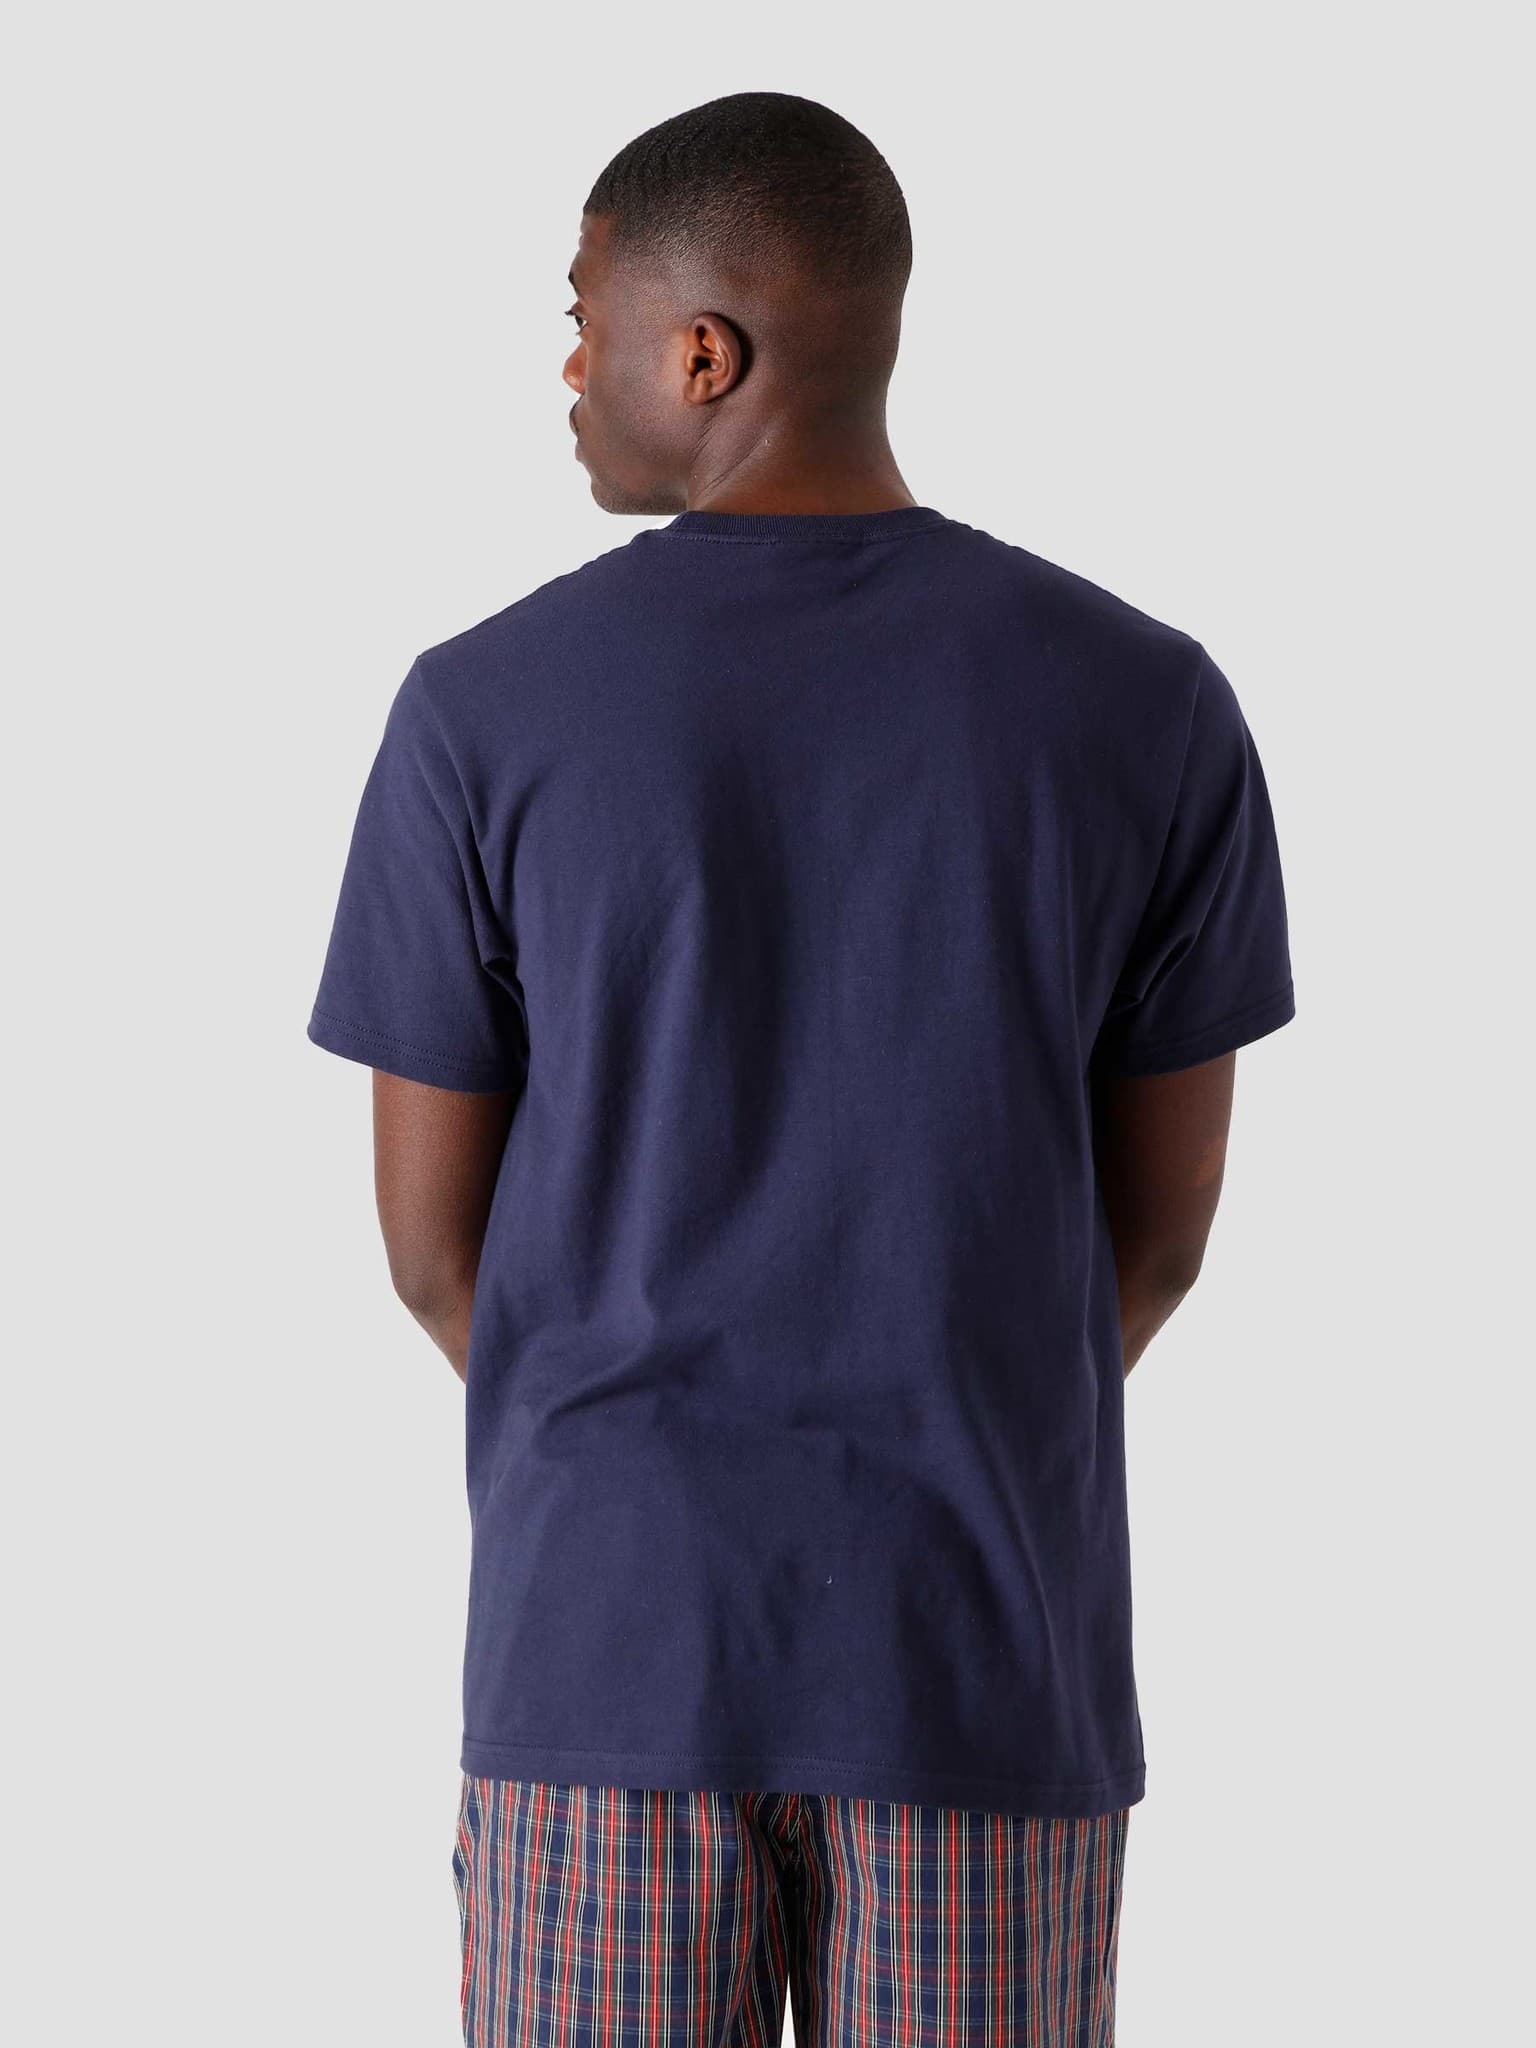 Matchbook T-Shirt Navy 1904660-0806